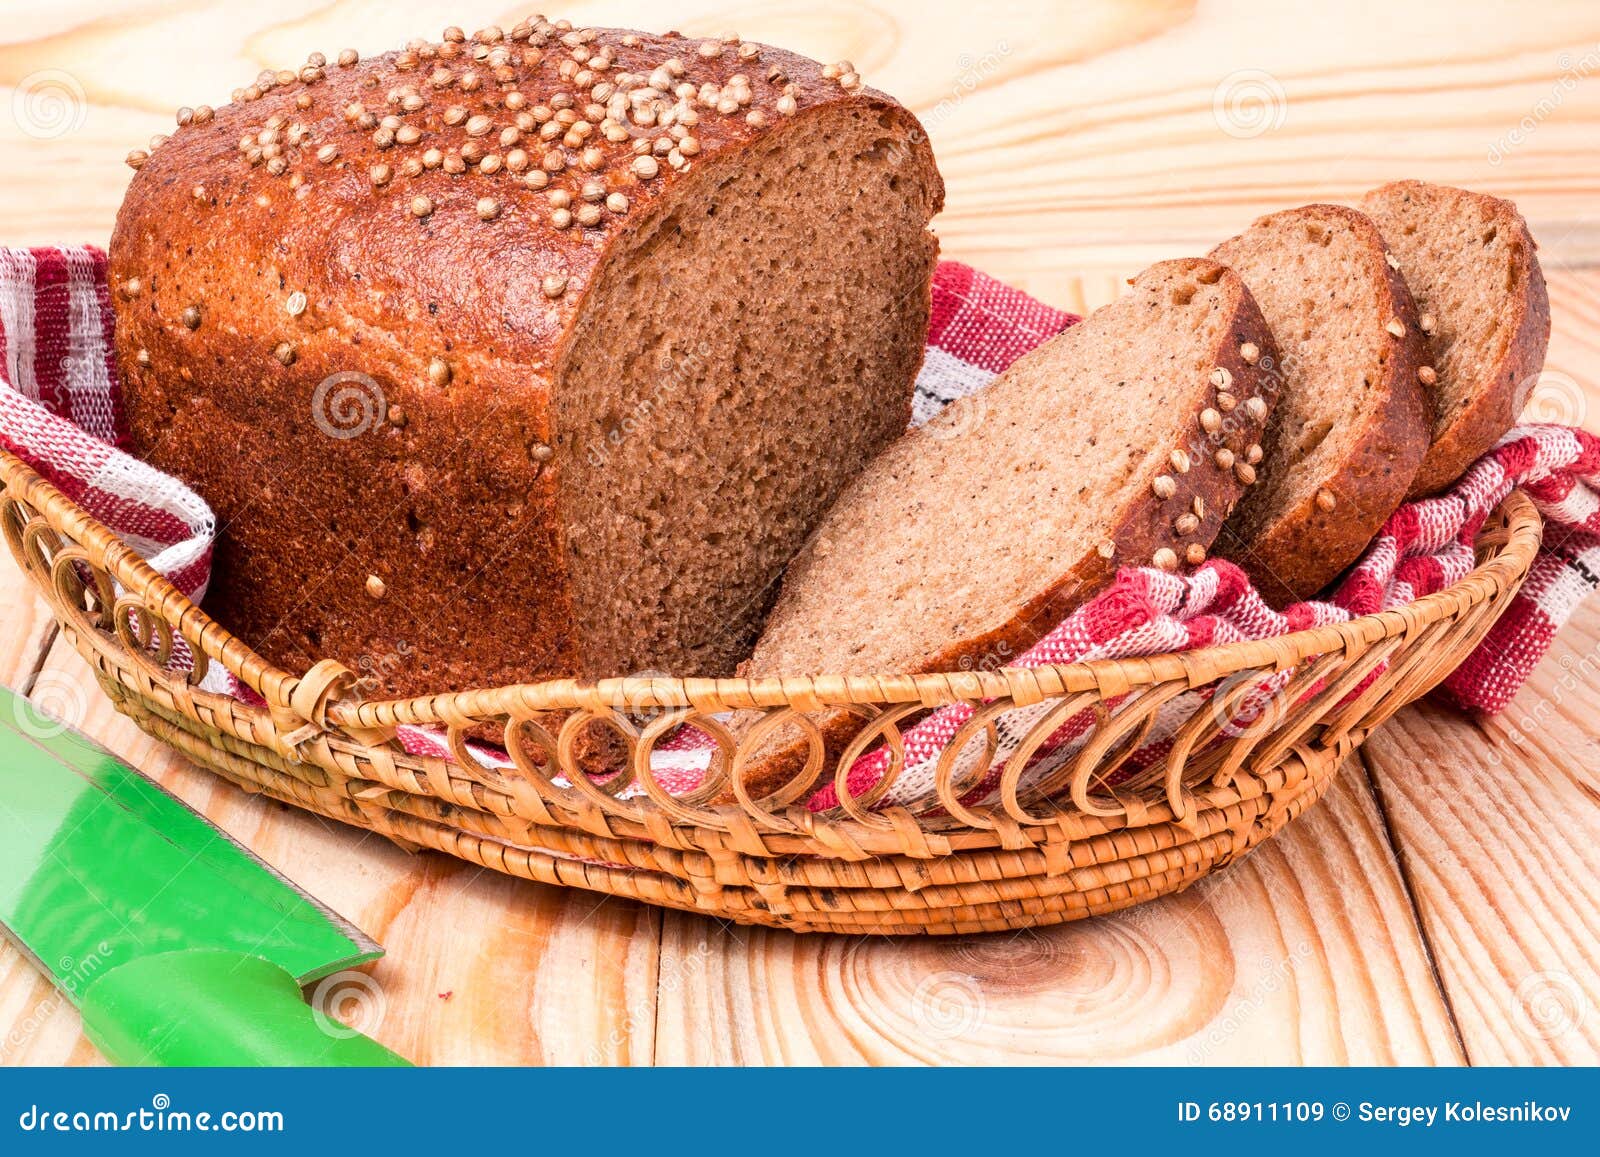 【吃在俄罗斯】这七款面包，撑起来俄罗斯主食的半壁江山